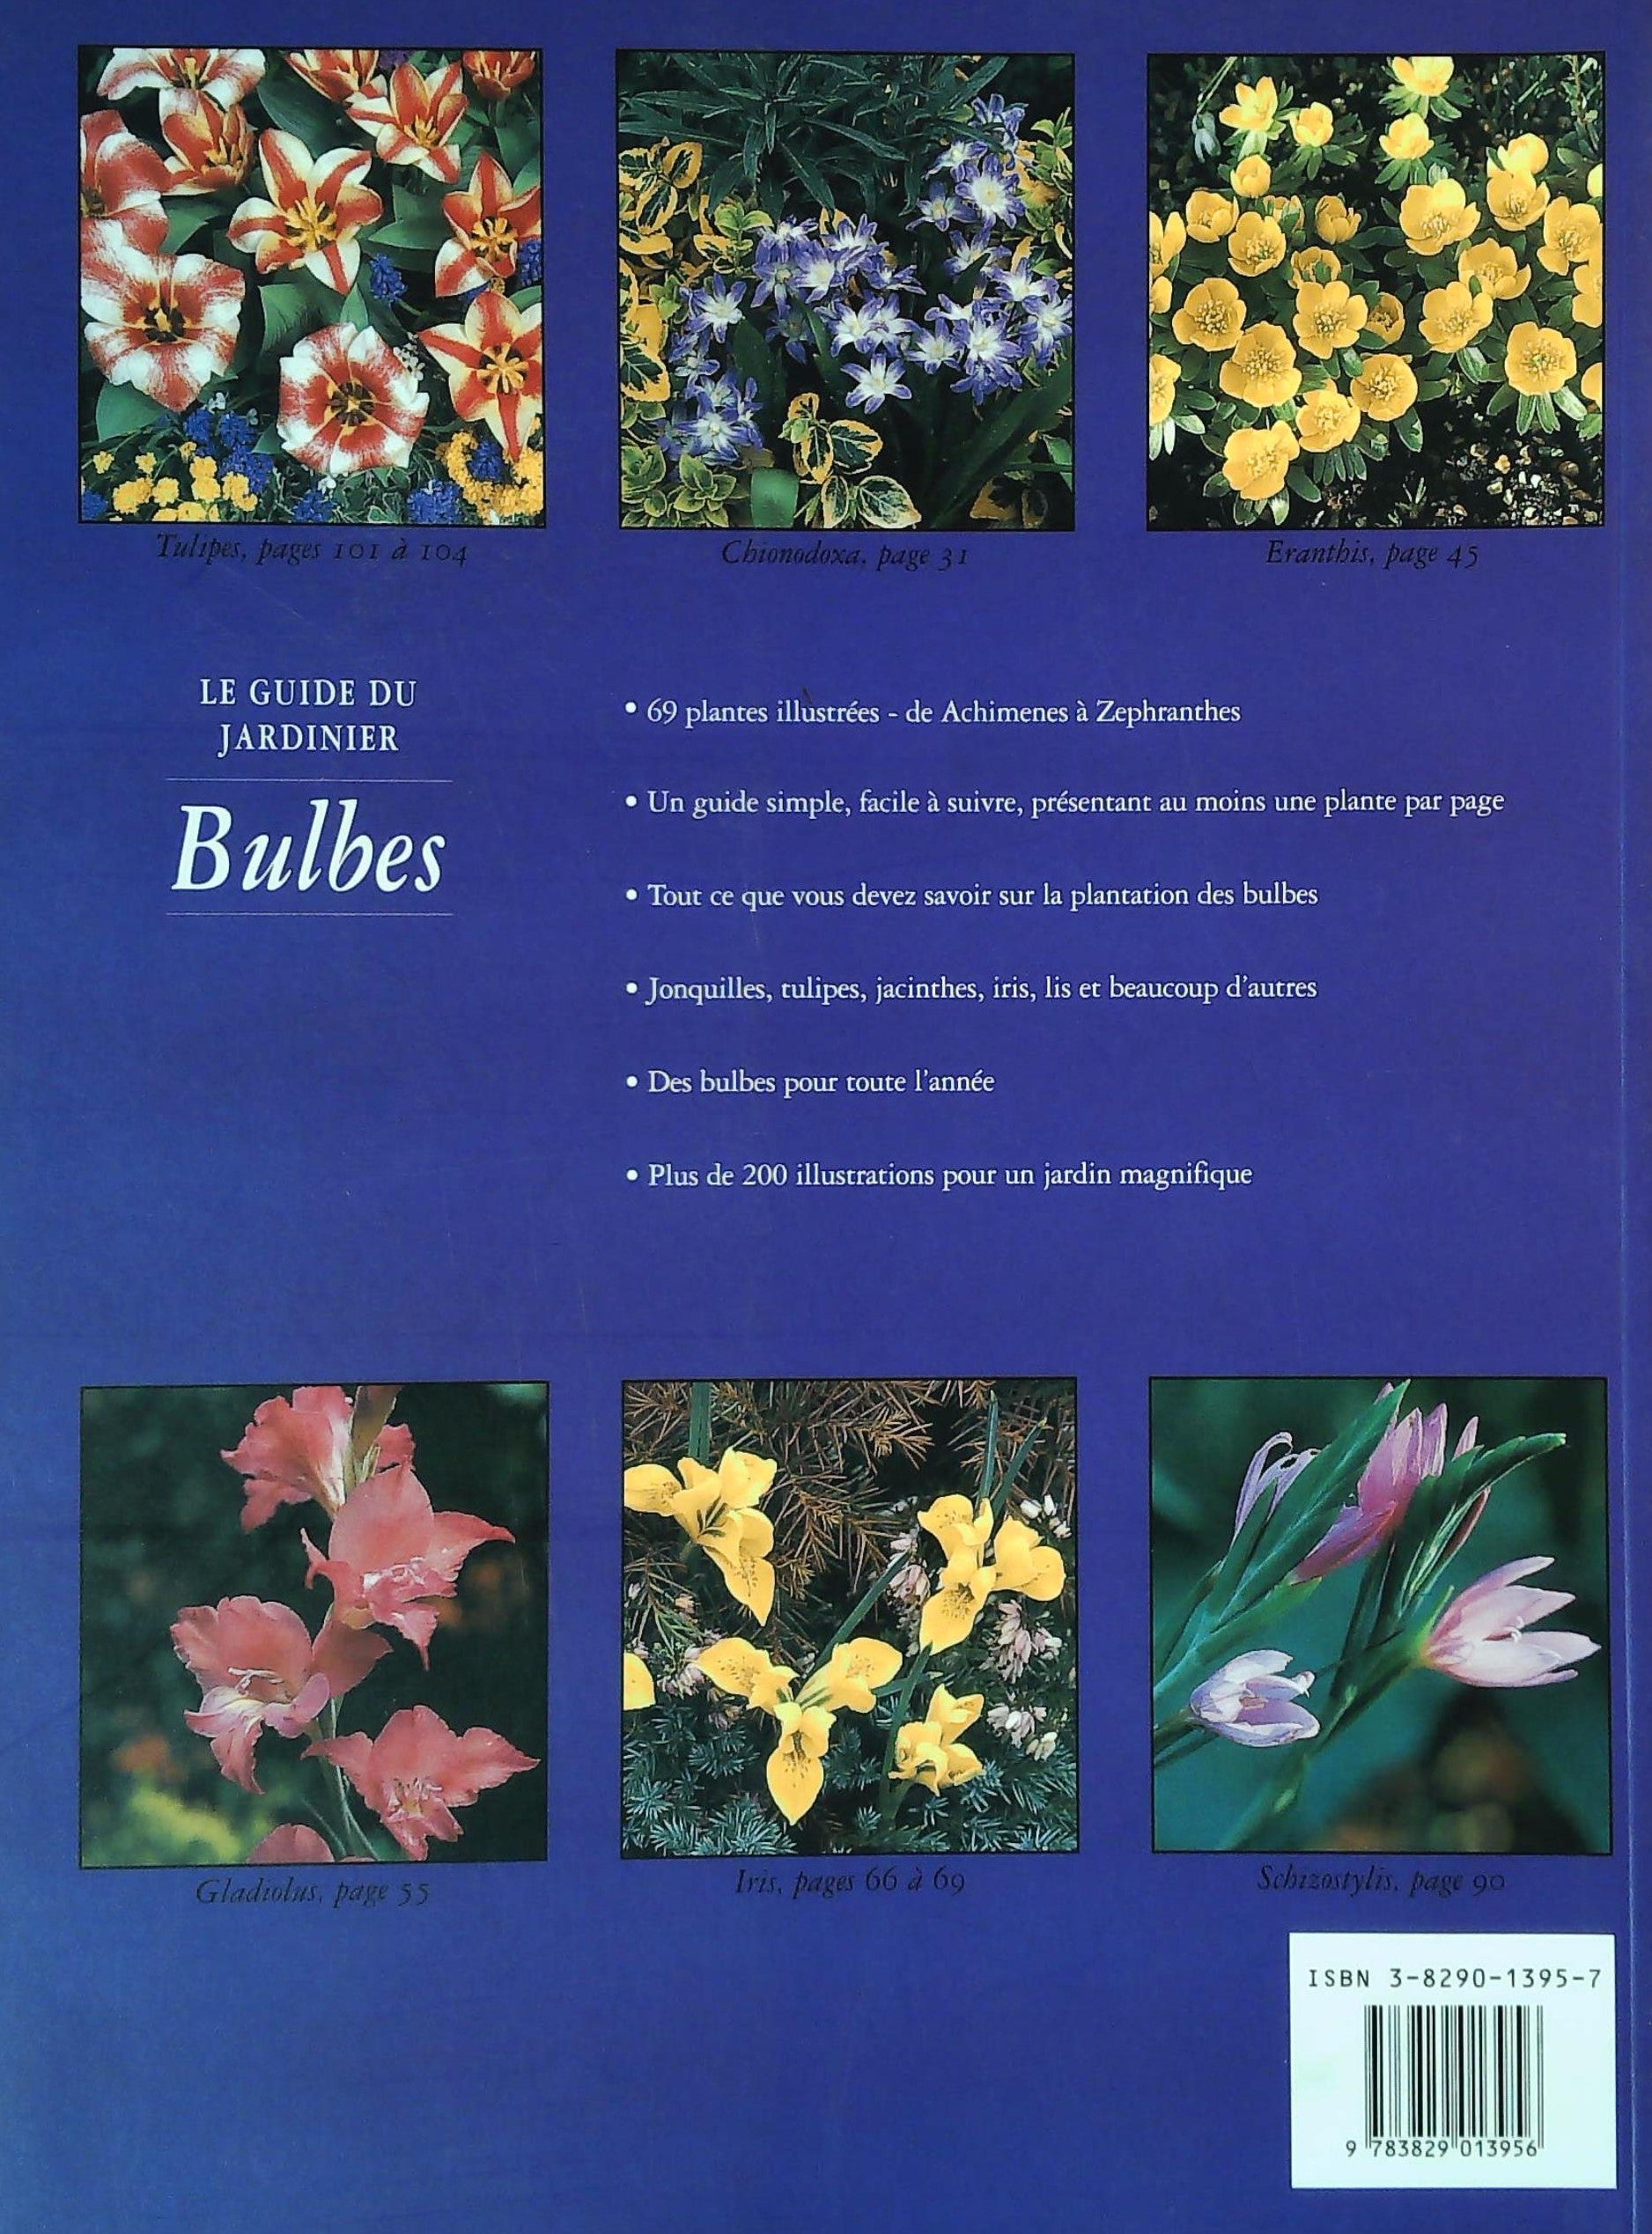 Le guide du jardinier : Bulbes